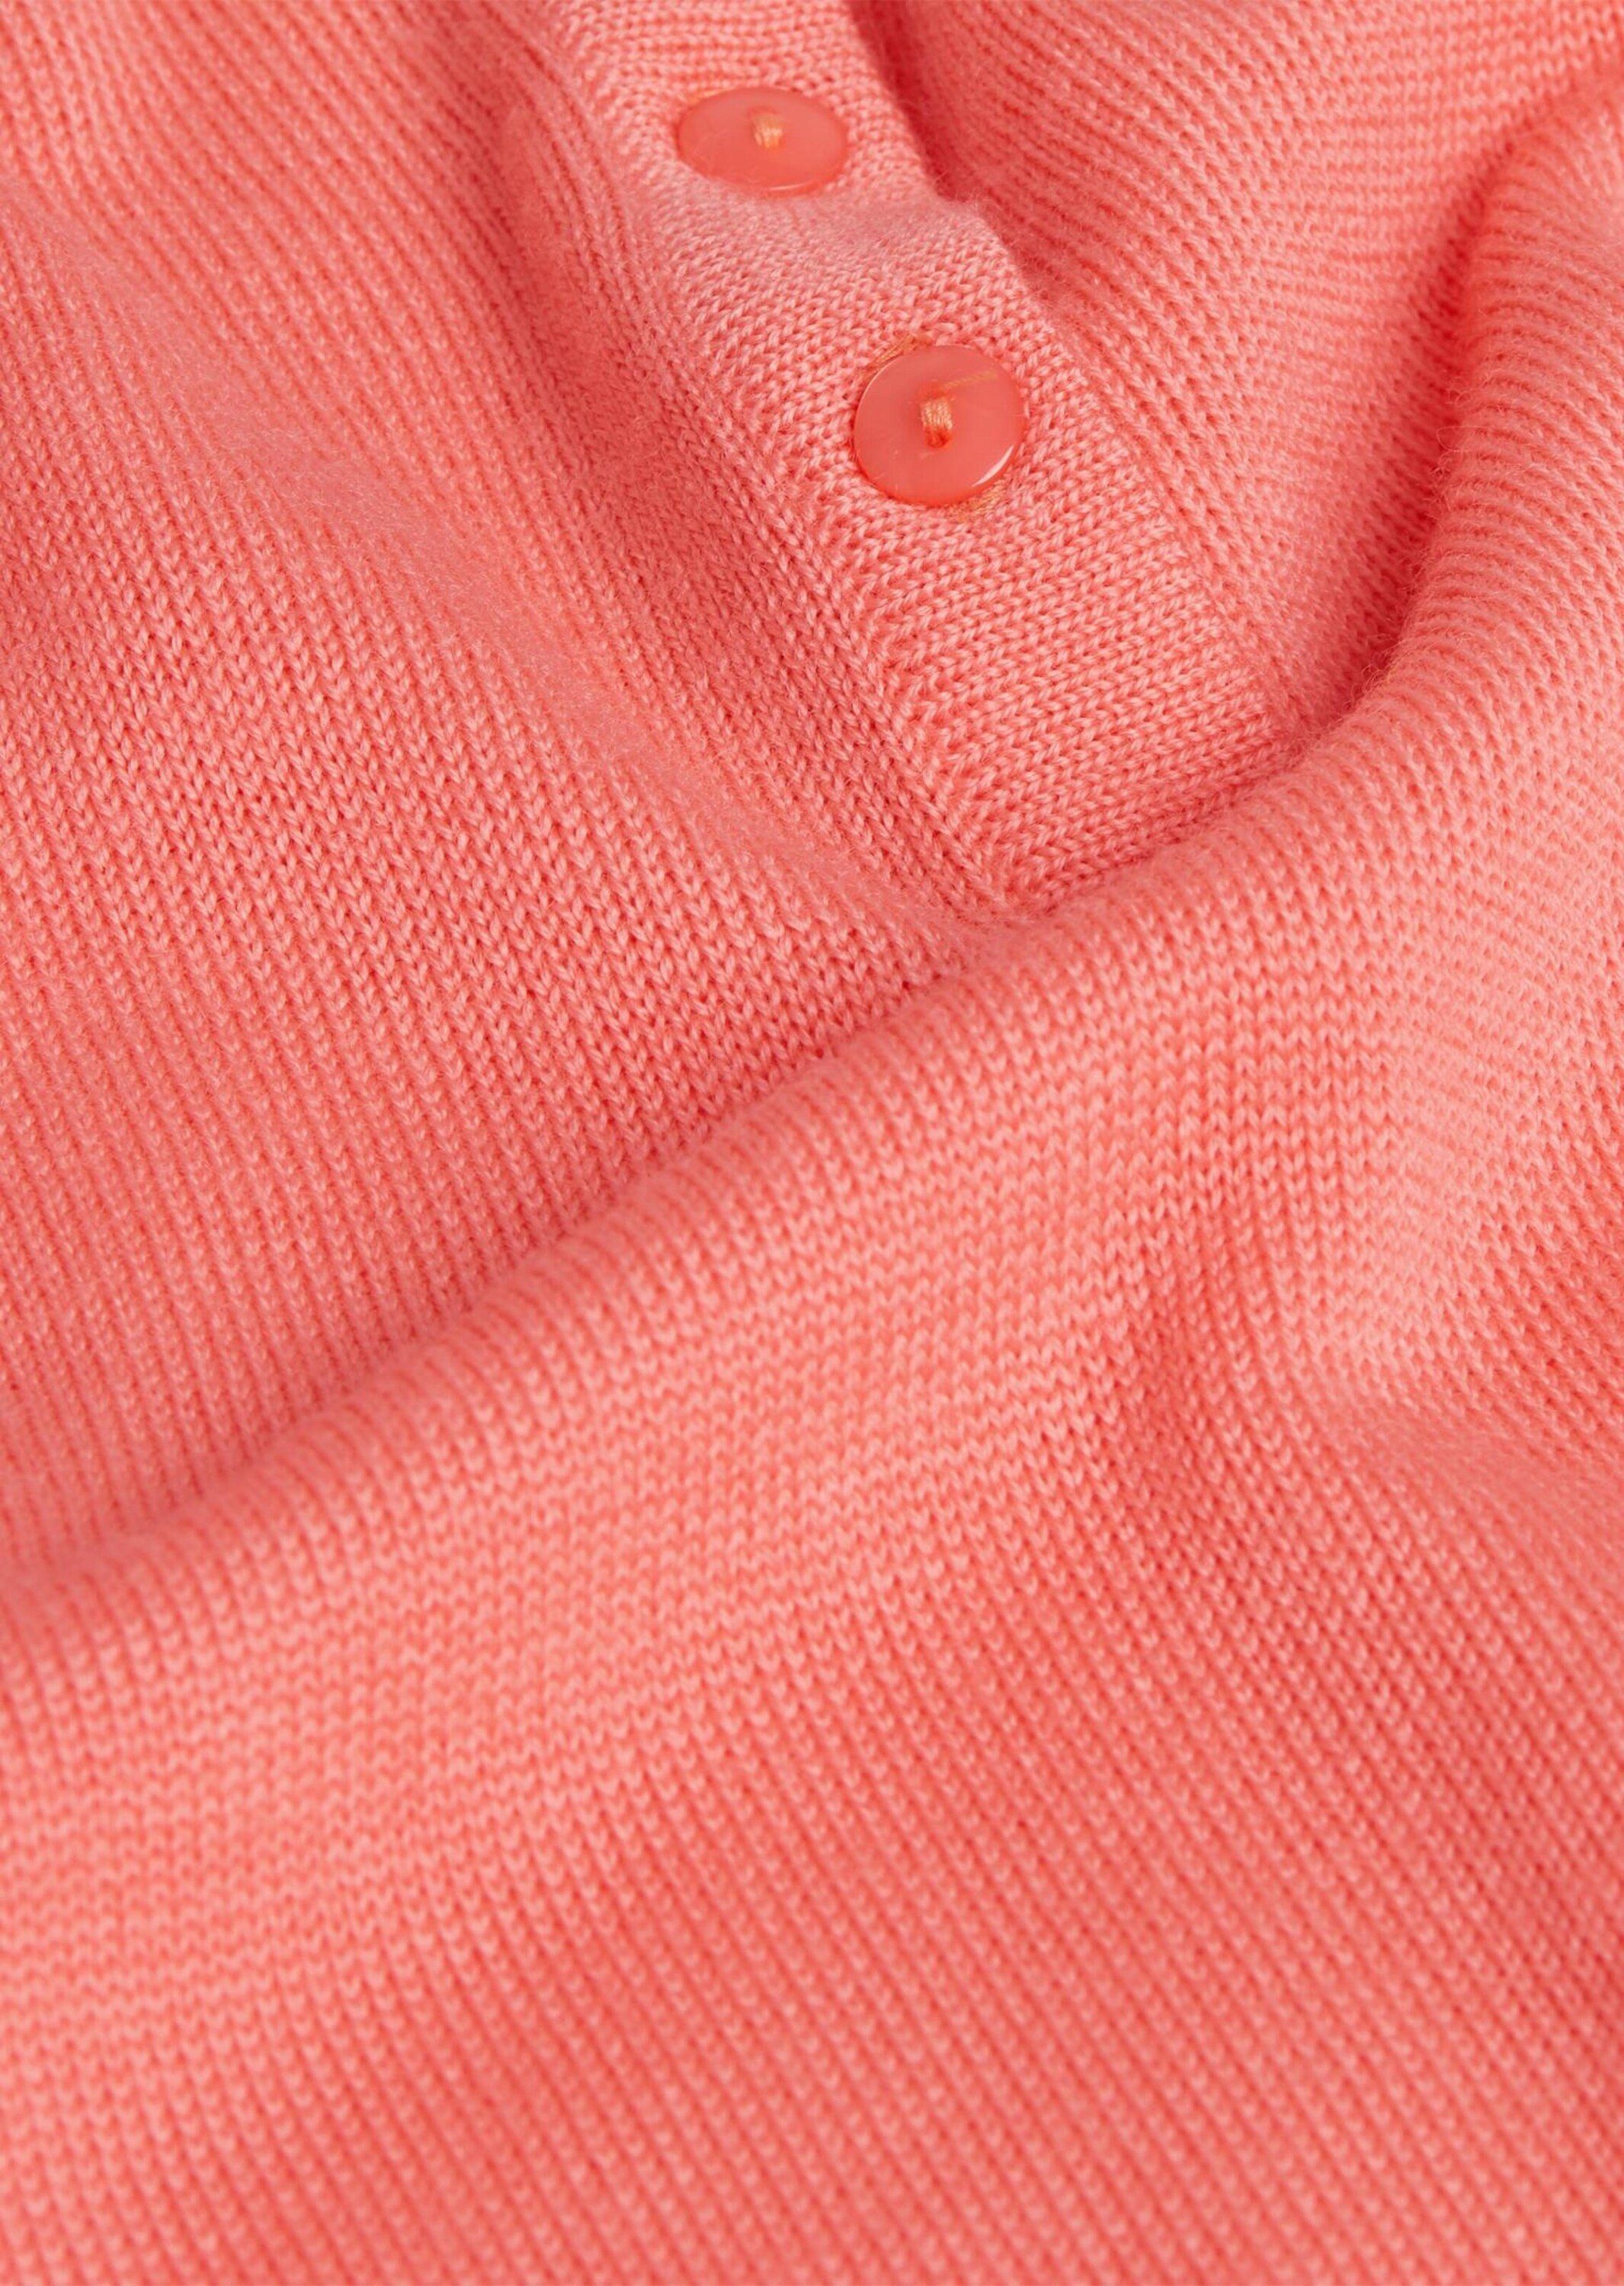 GOLDNER Strickpullover Kurzgröße: Pullover in melone Qualität hochwertiger